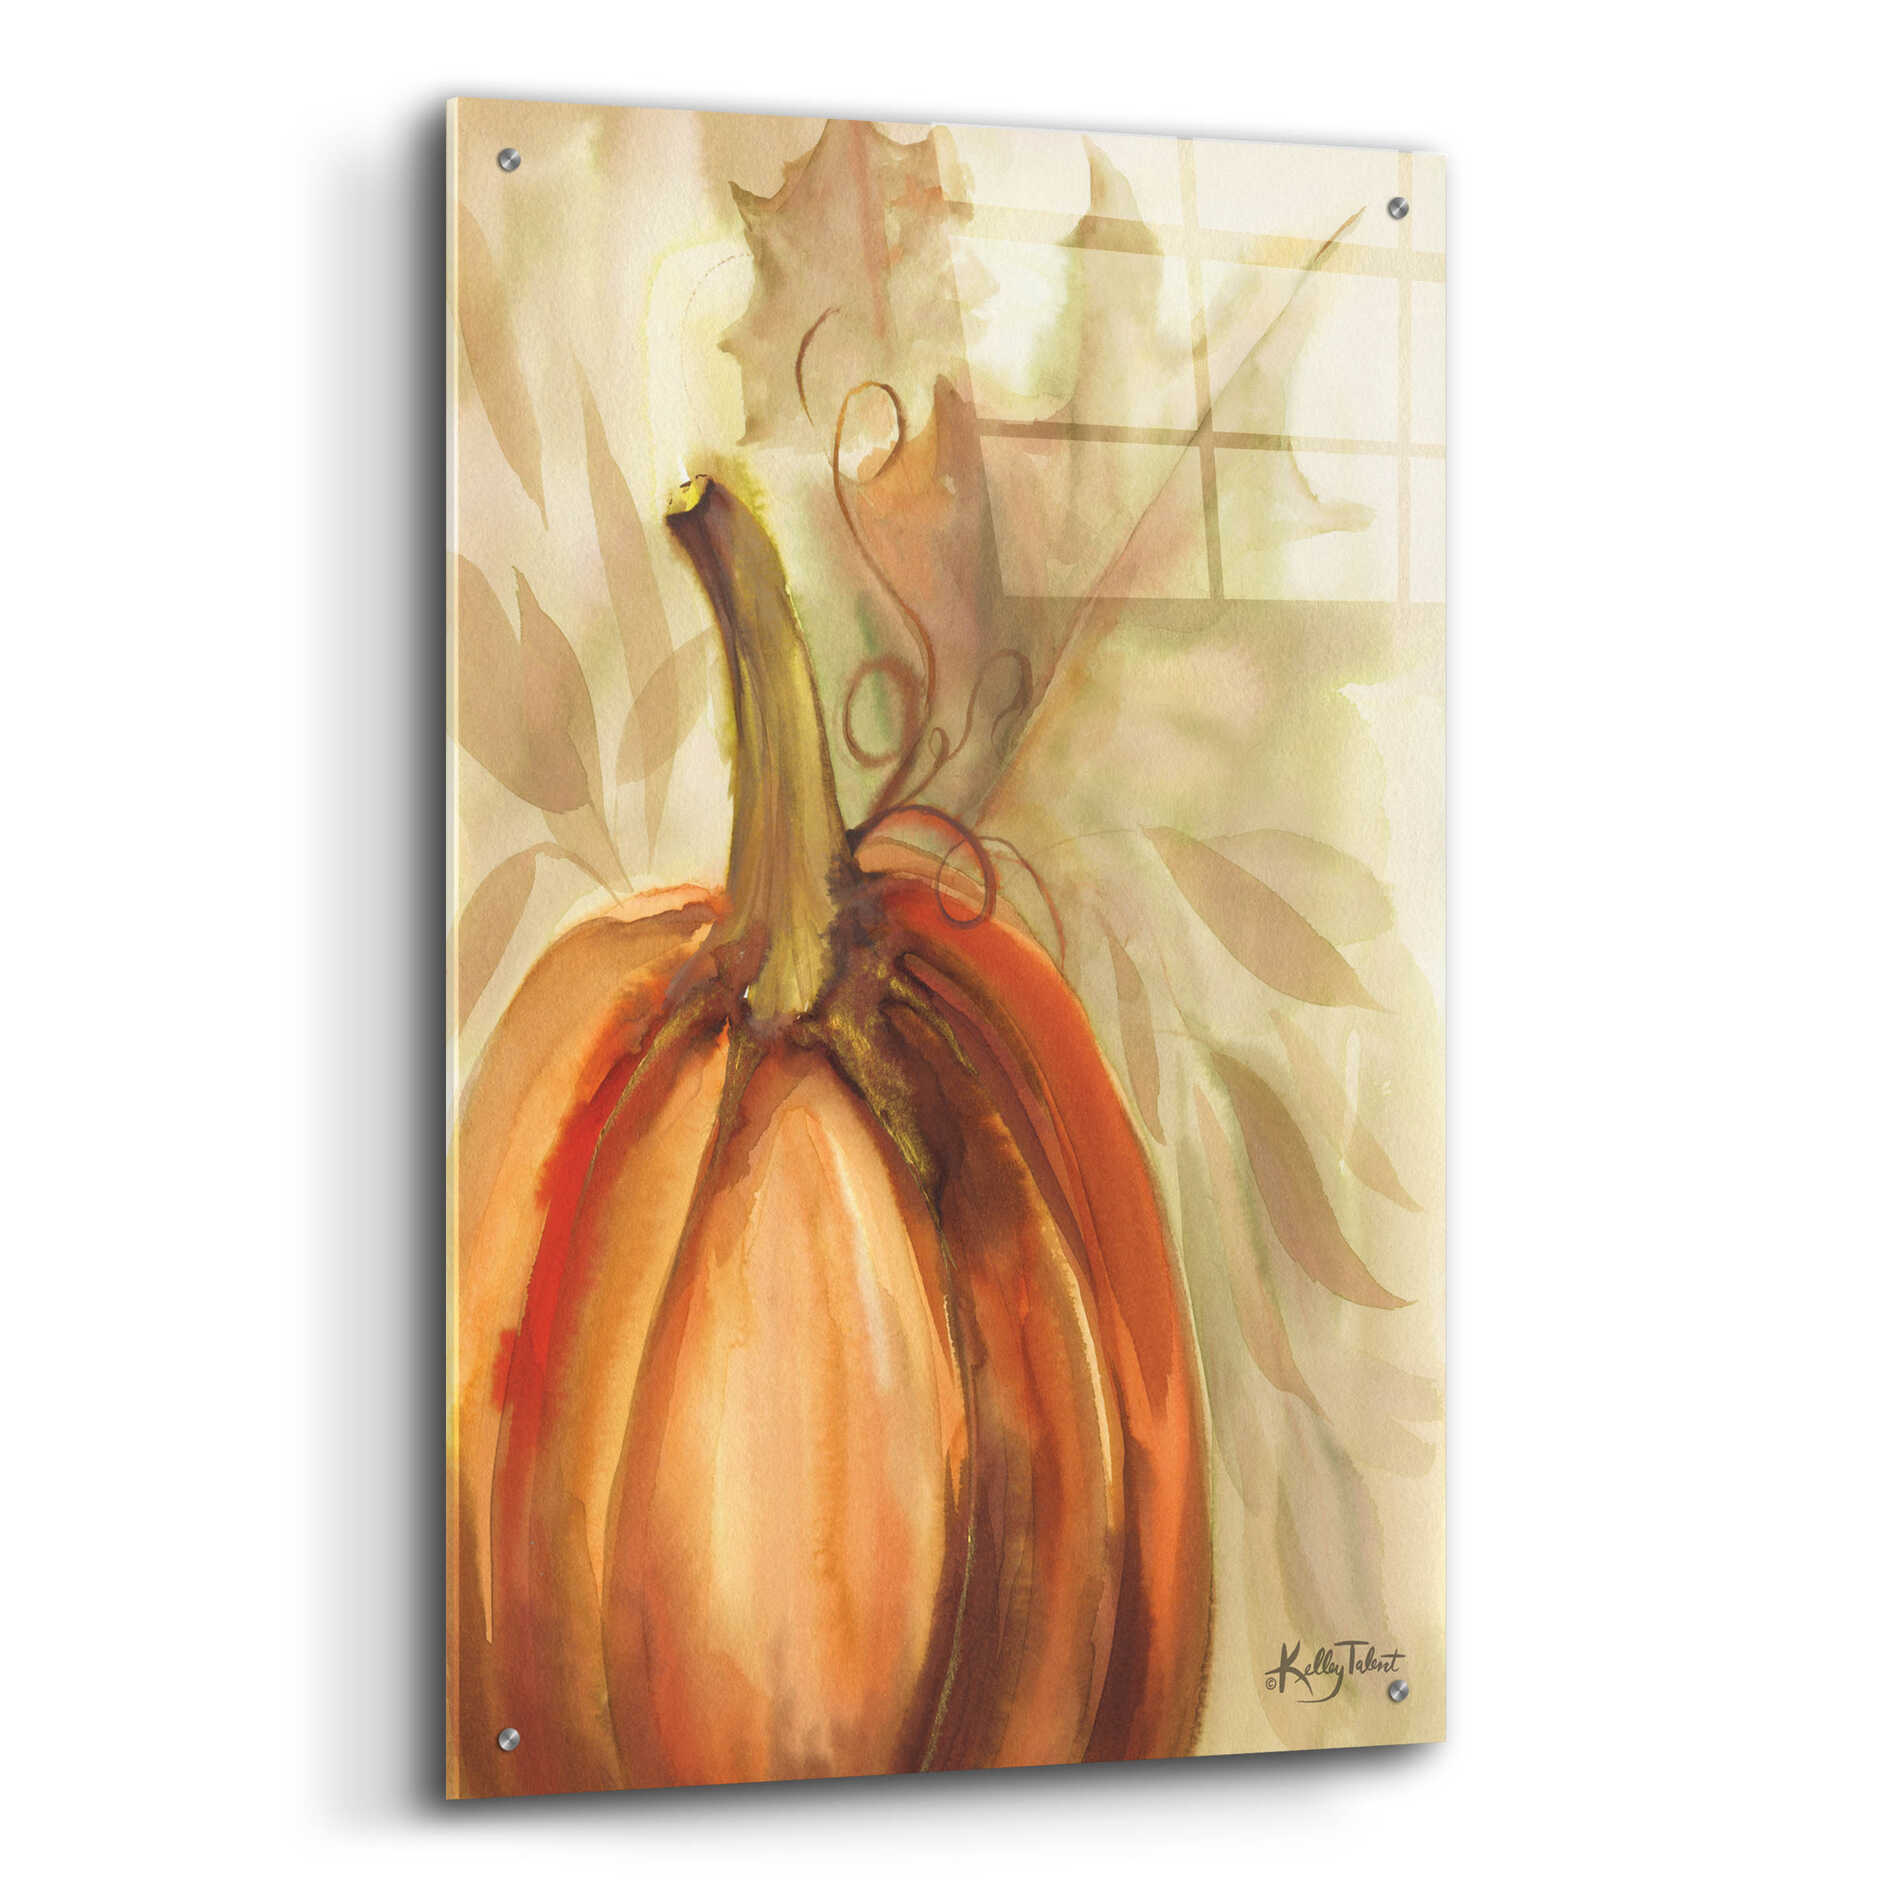 Epic Art 'Golden Fall Pumpkin' by Kelley Talent, Acrylic Glass Wall Art,24x36